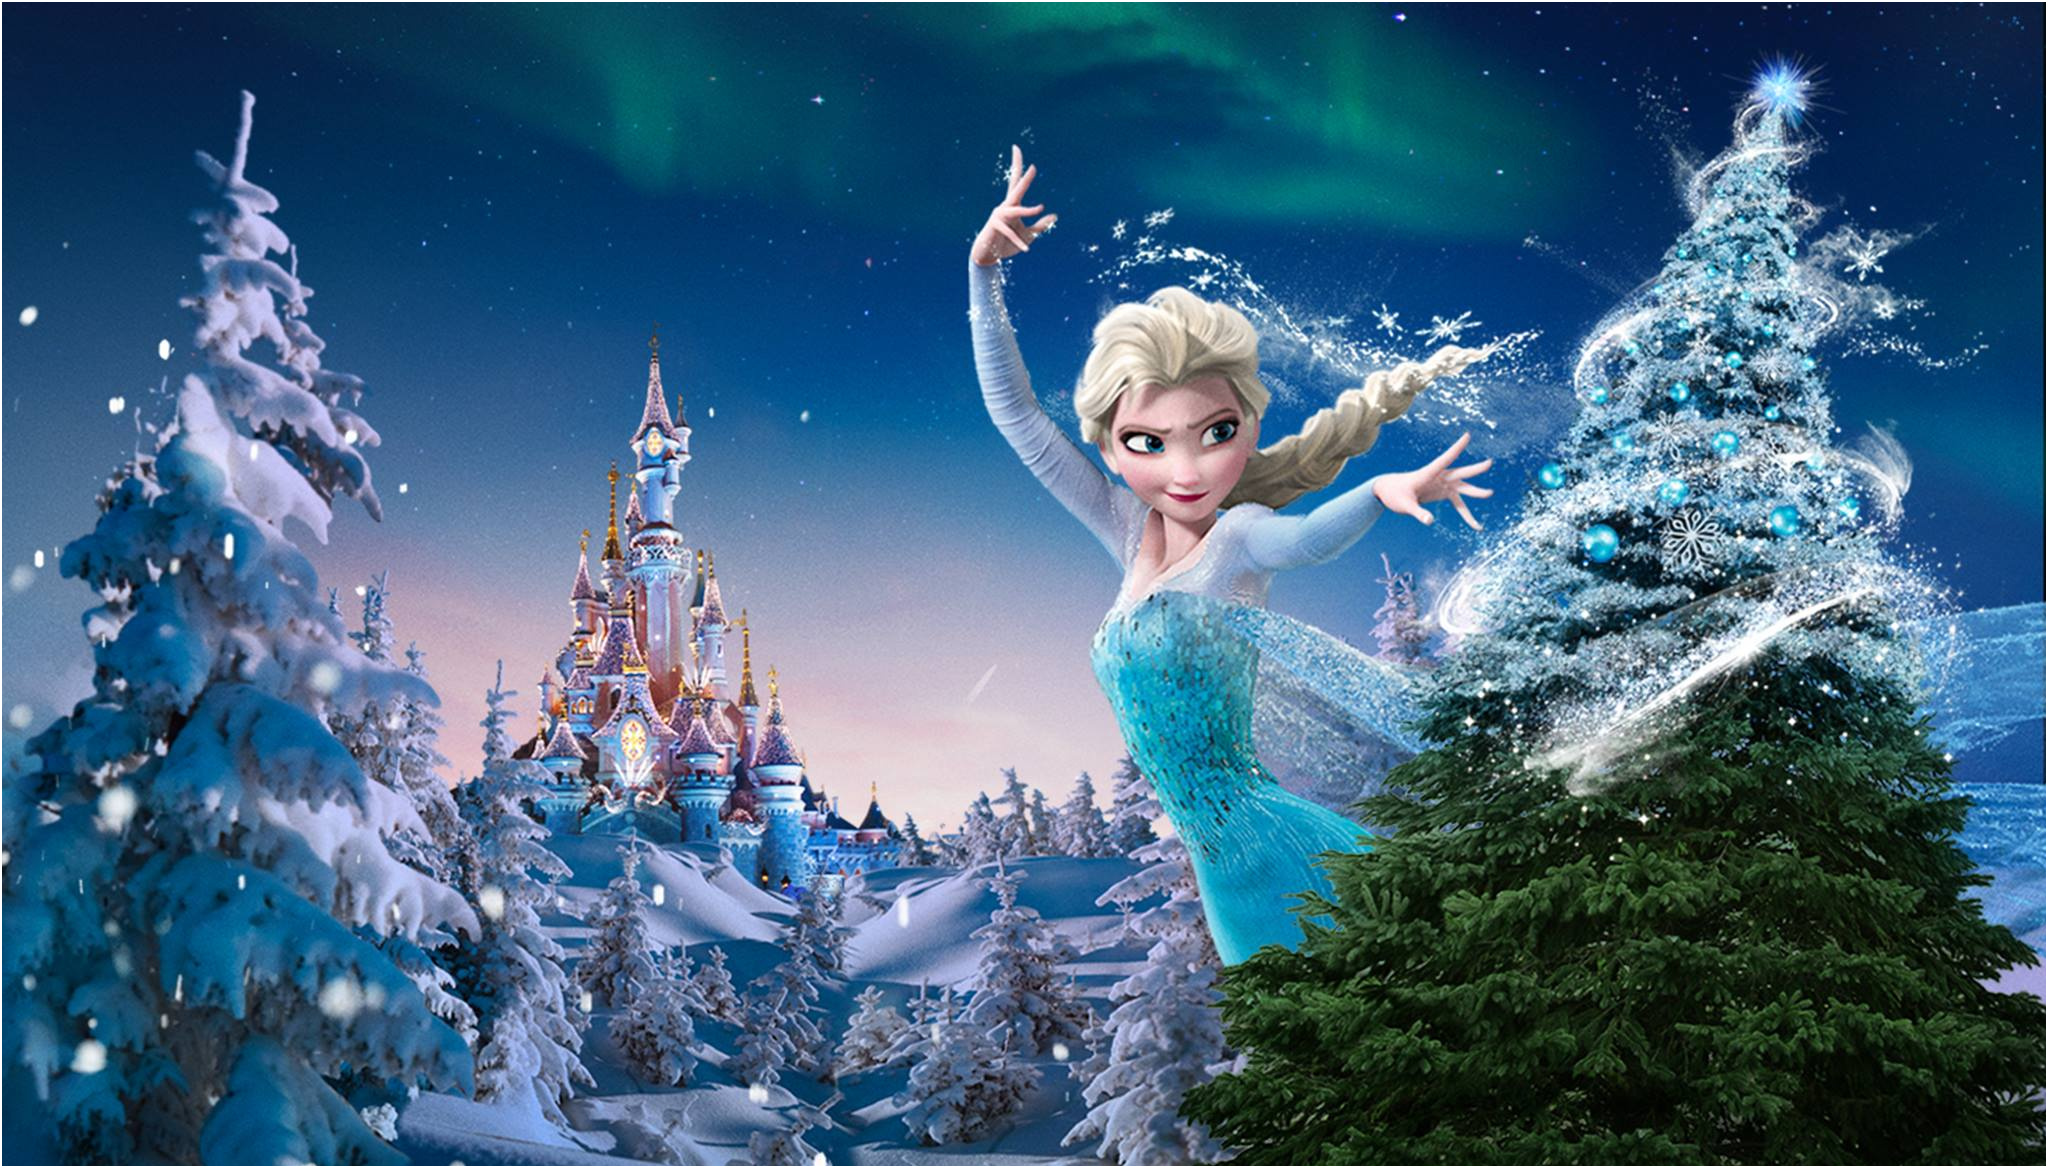 La Reine Des Neiges Elsa Luxe 1000 Images About Frozen Disney On Pinterest